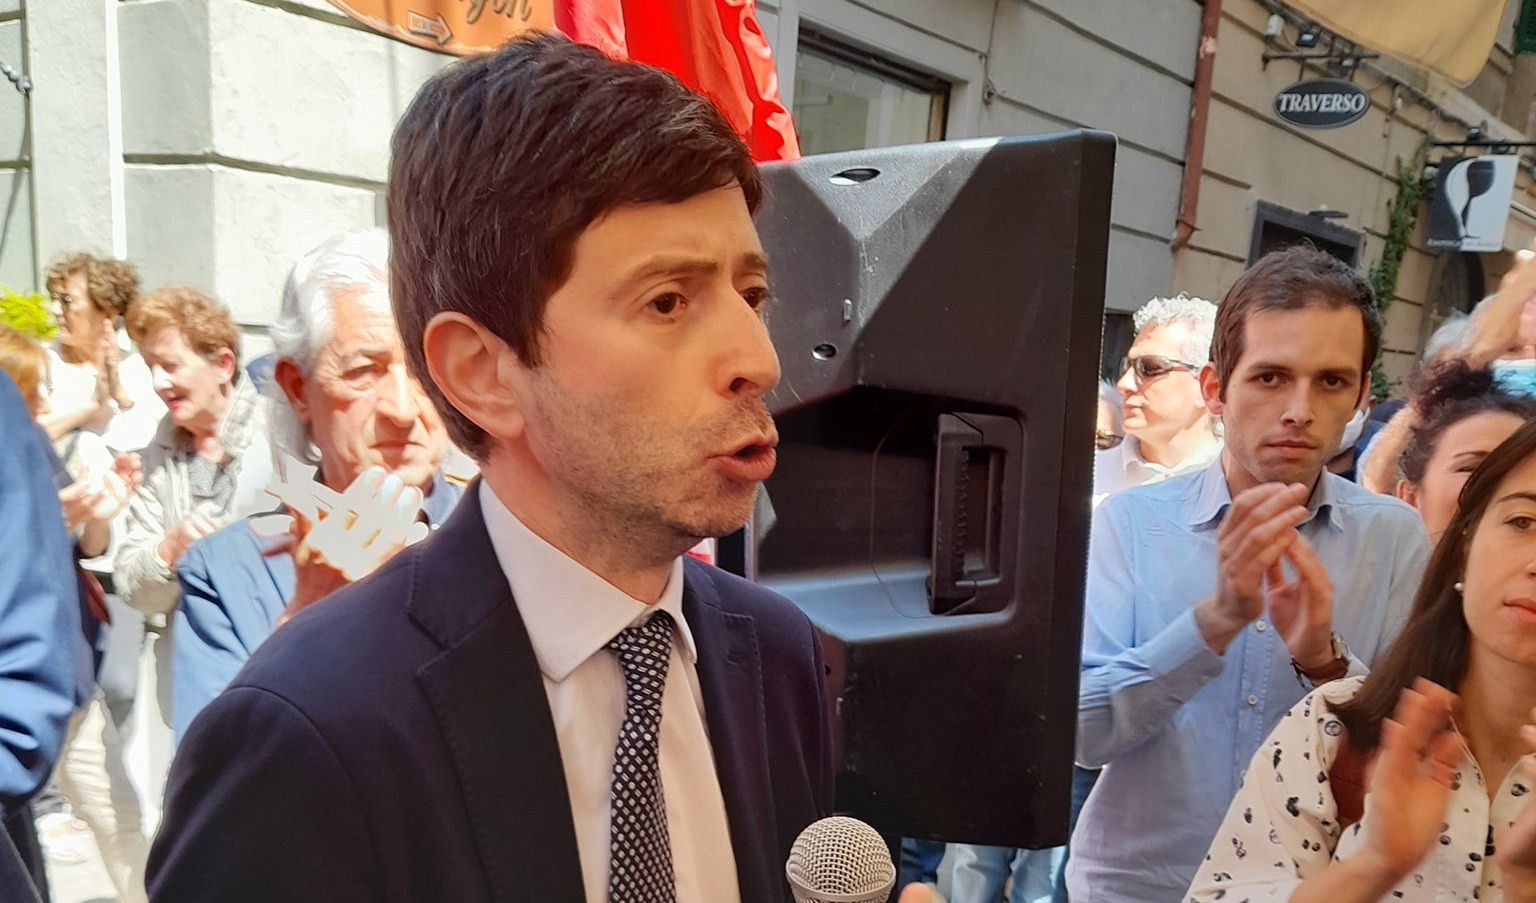 Il ministro Speranza prima alla Spezia poi a Genova per sostenere i candidati sindaco: accolto da gruppi di no vax